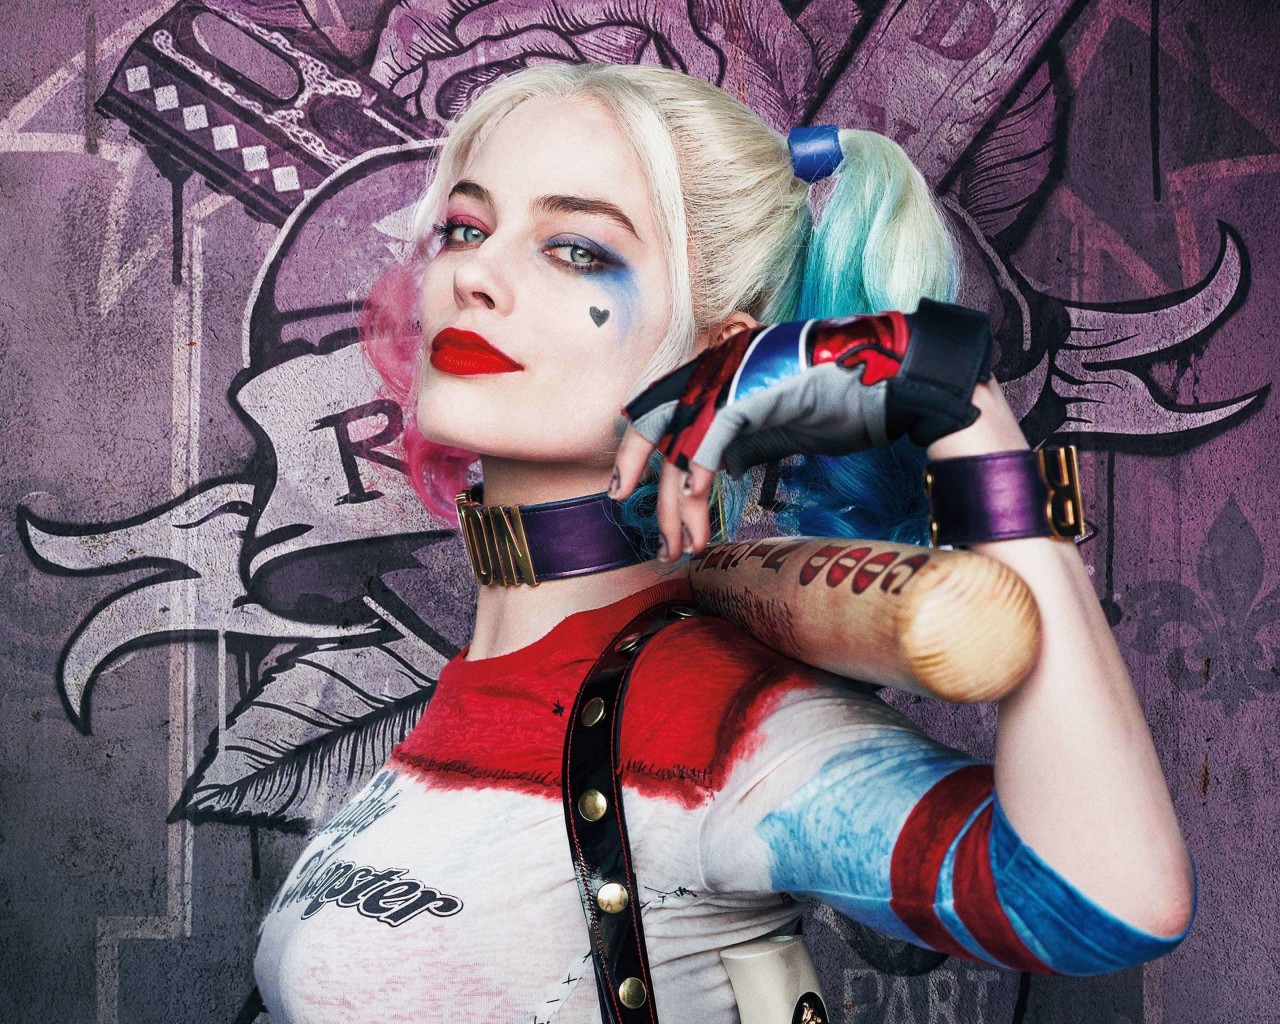 Harley Quinn - Suicide Squad Wallpaper for Desktop 1280x1024